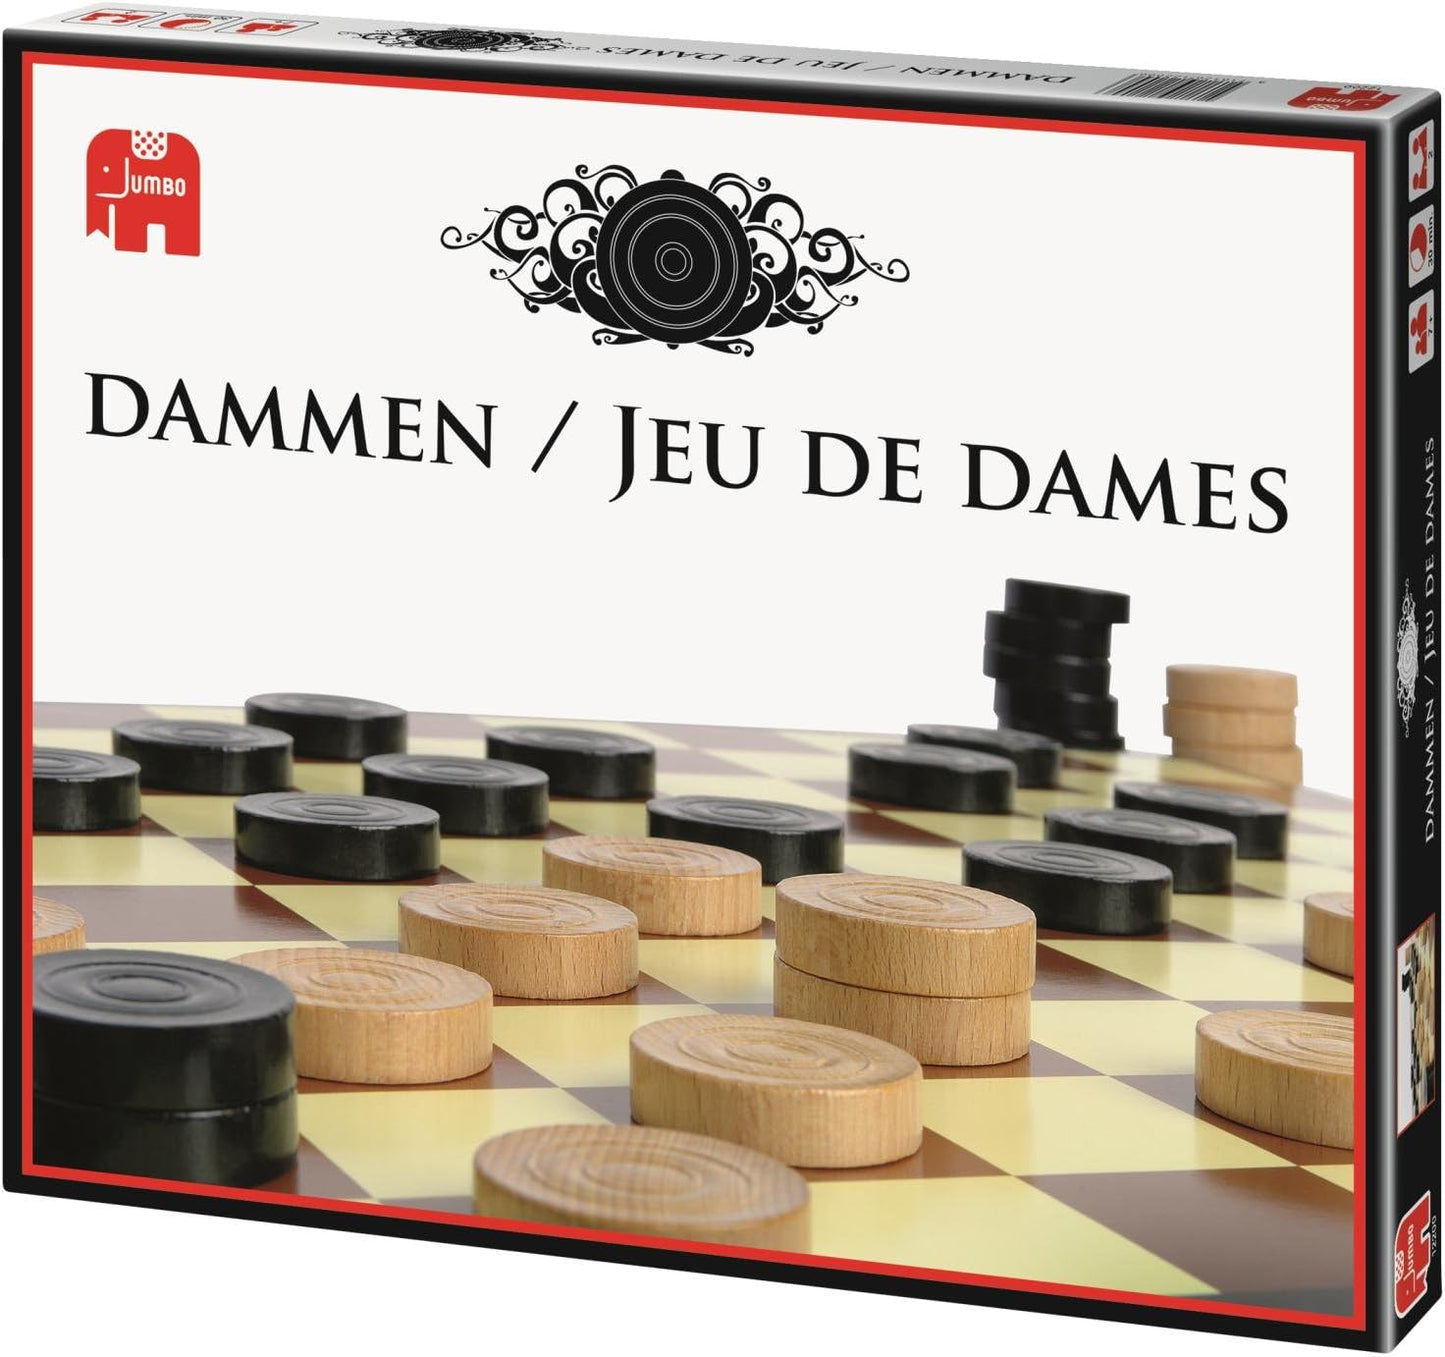 Dammen/ Jeu de dames - product image - Jumboplay.com